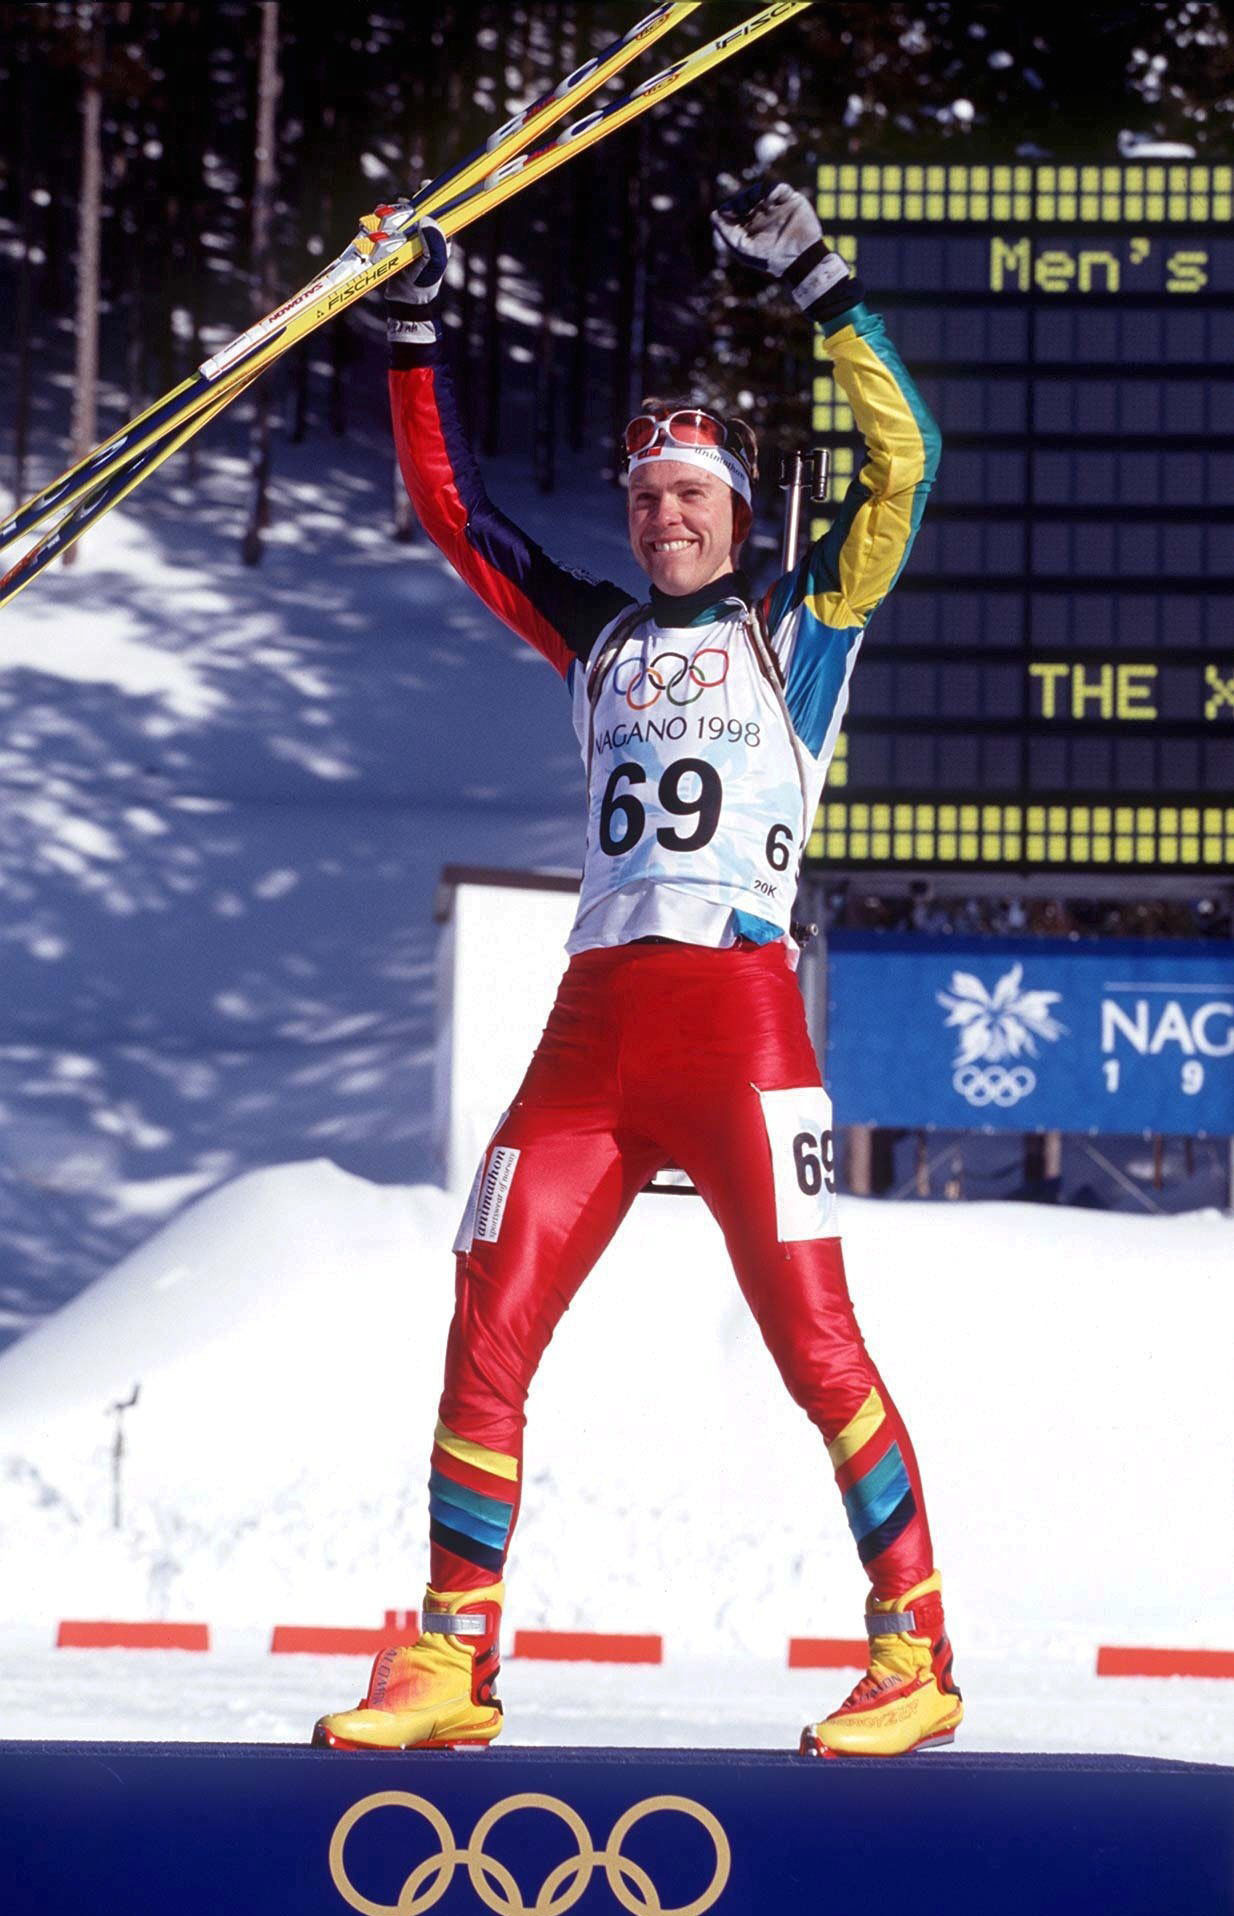 Halvard Hanevold won individual Olympic gold at Nagano 1998 ©Getty Images